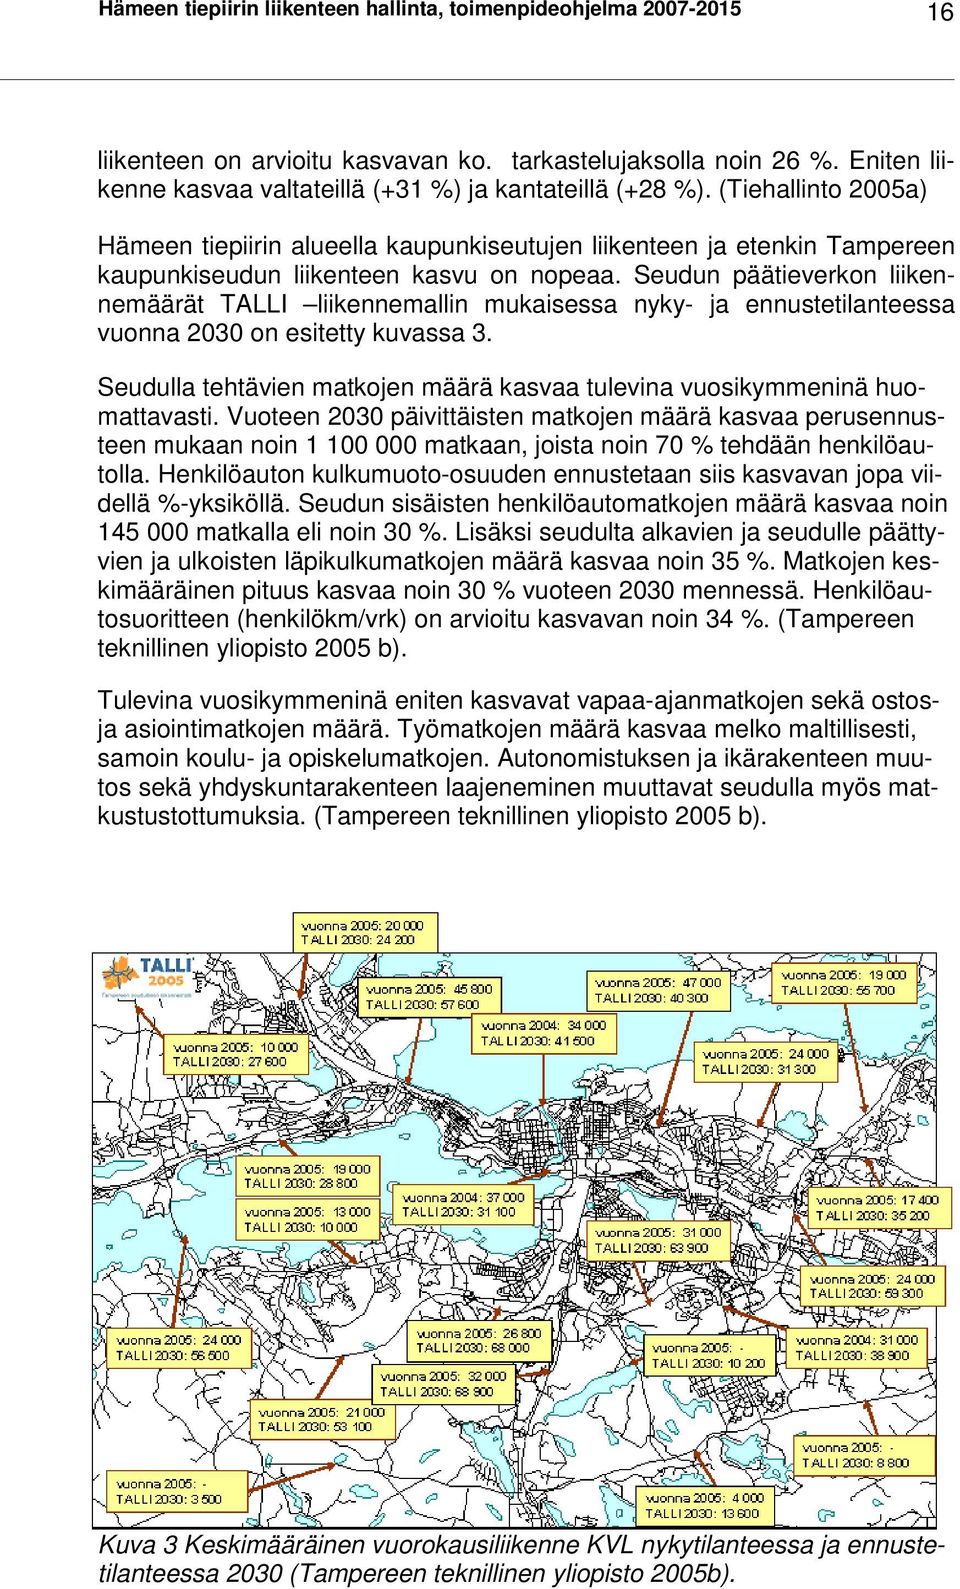 (Tiehallinto 2005a) Hämeen tiepiirin alueella kaupunkiseutujen liikenteen ja etenkin Tampereen kaupunkiseudun liikenteen kasvu on nopeaa.